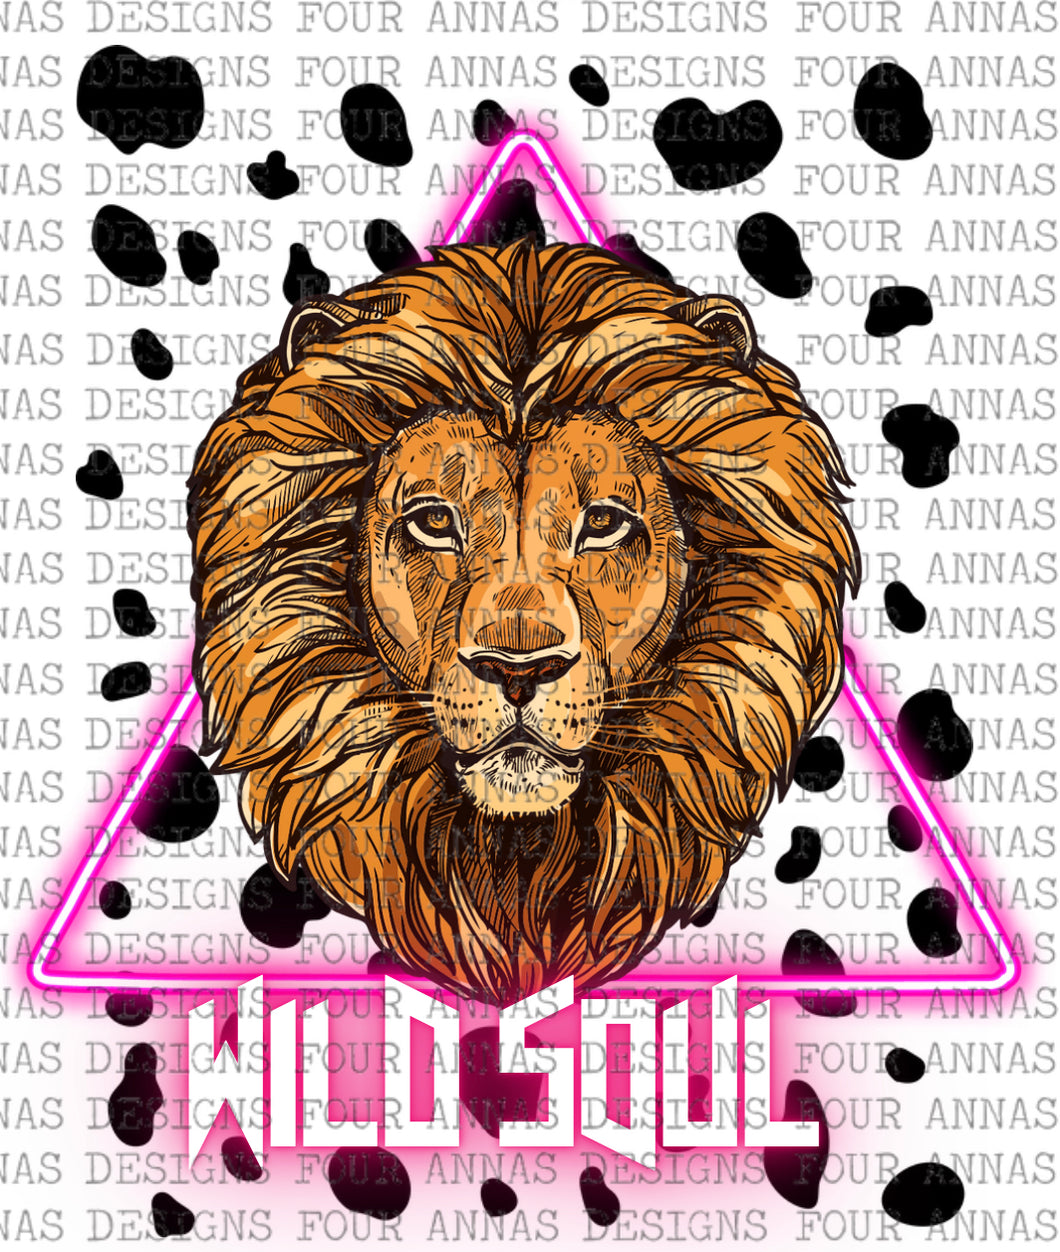 Wild soul lion